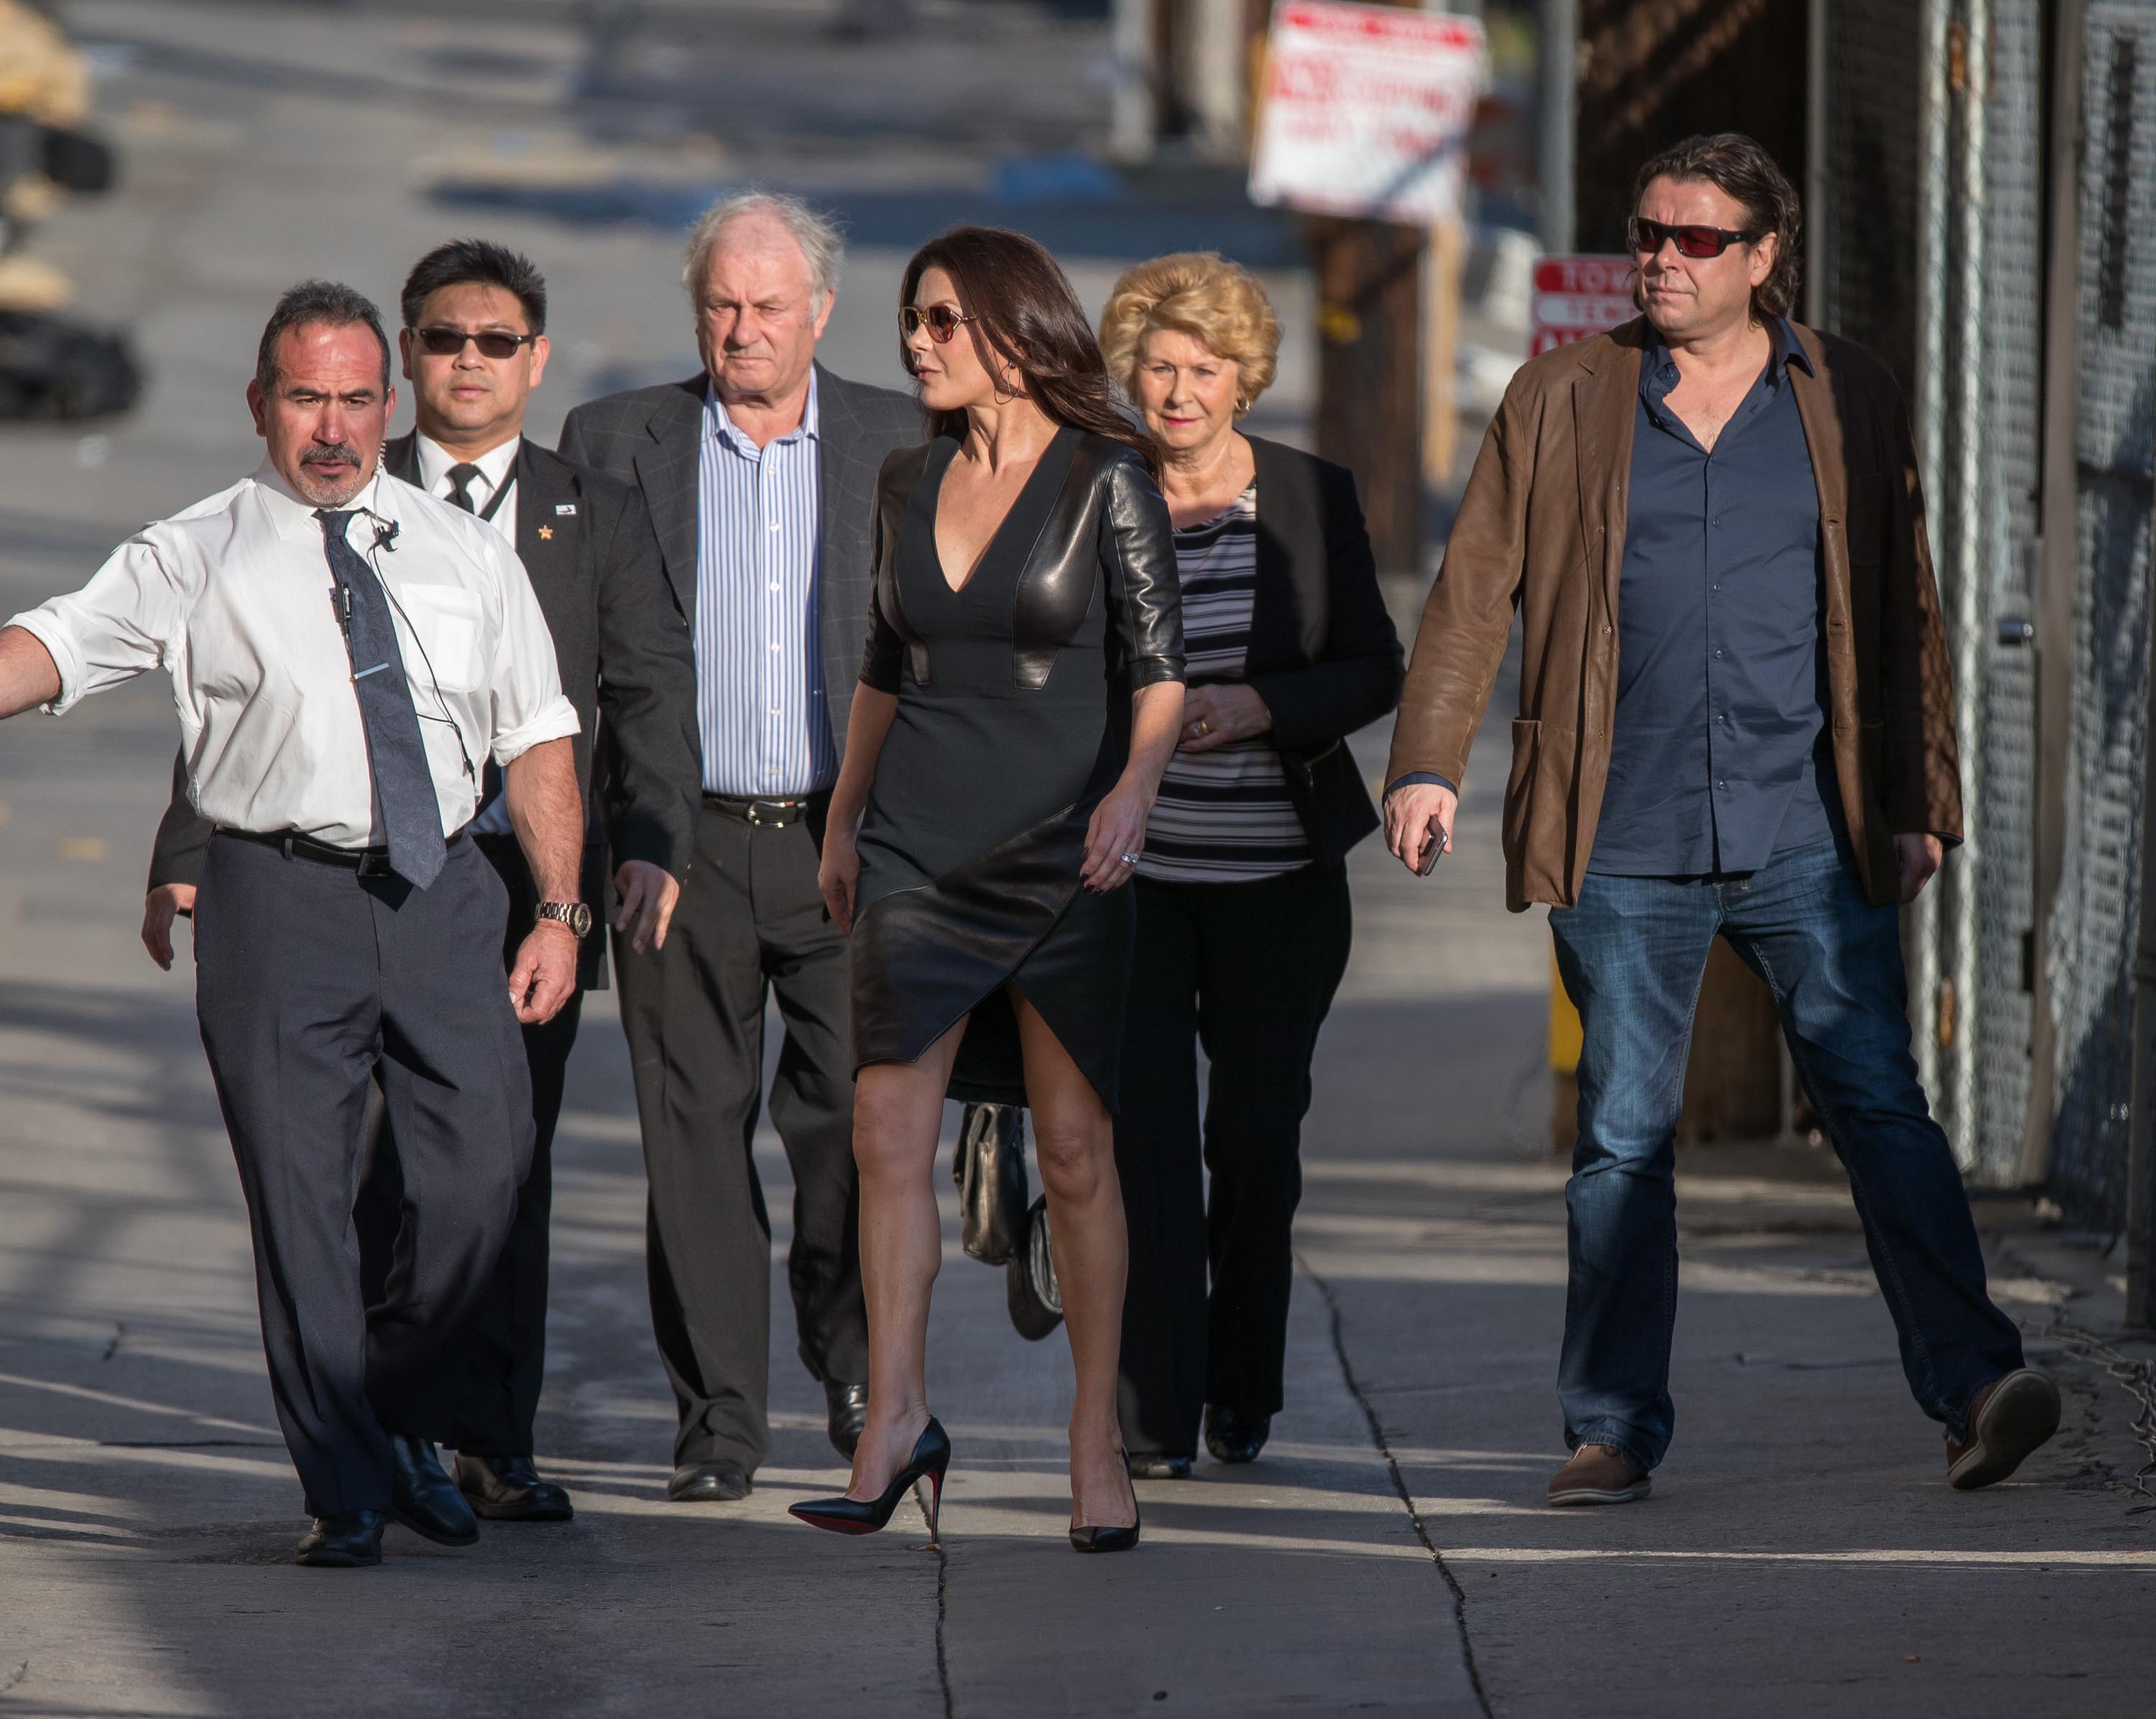 Catherine Zeta-Jones is seen at Kimmel